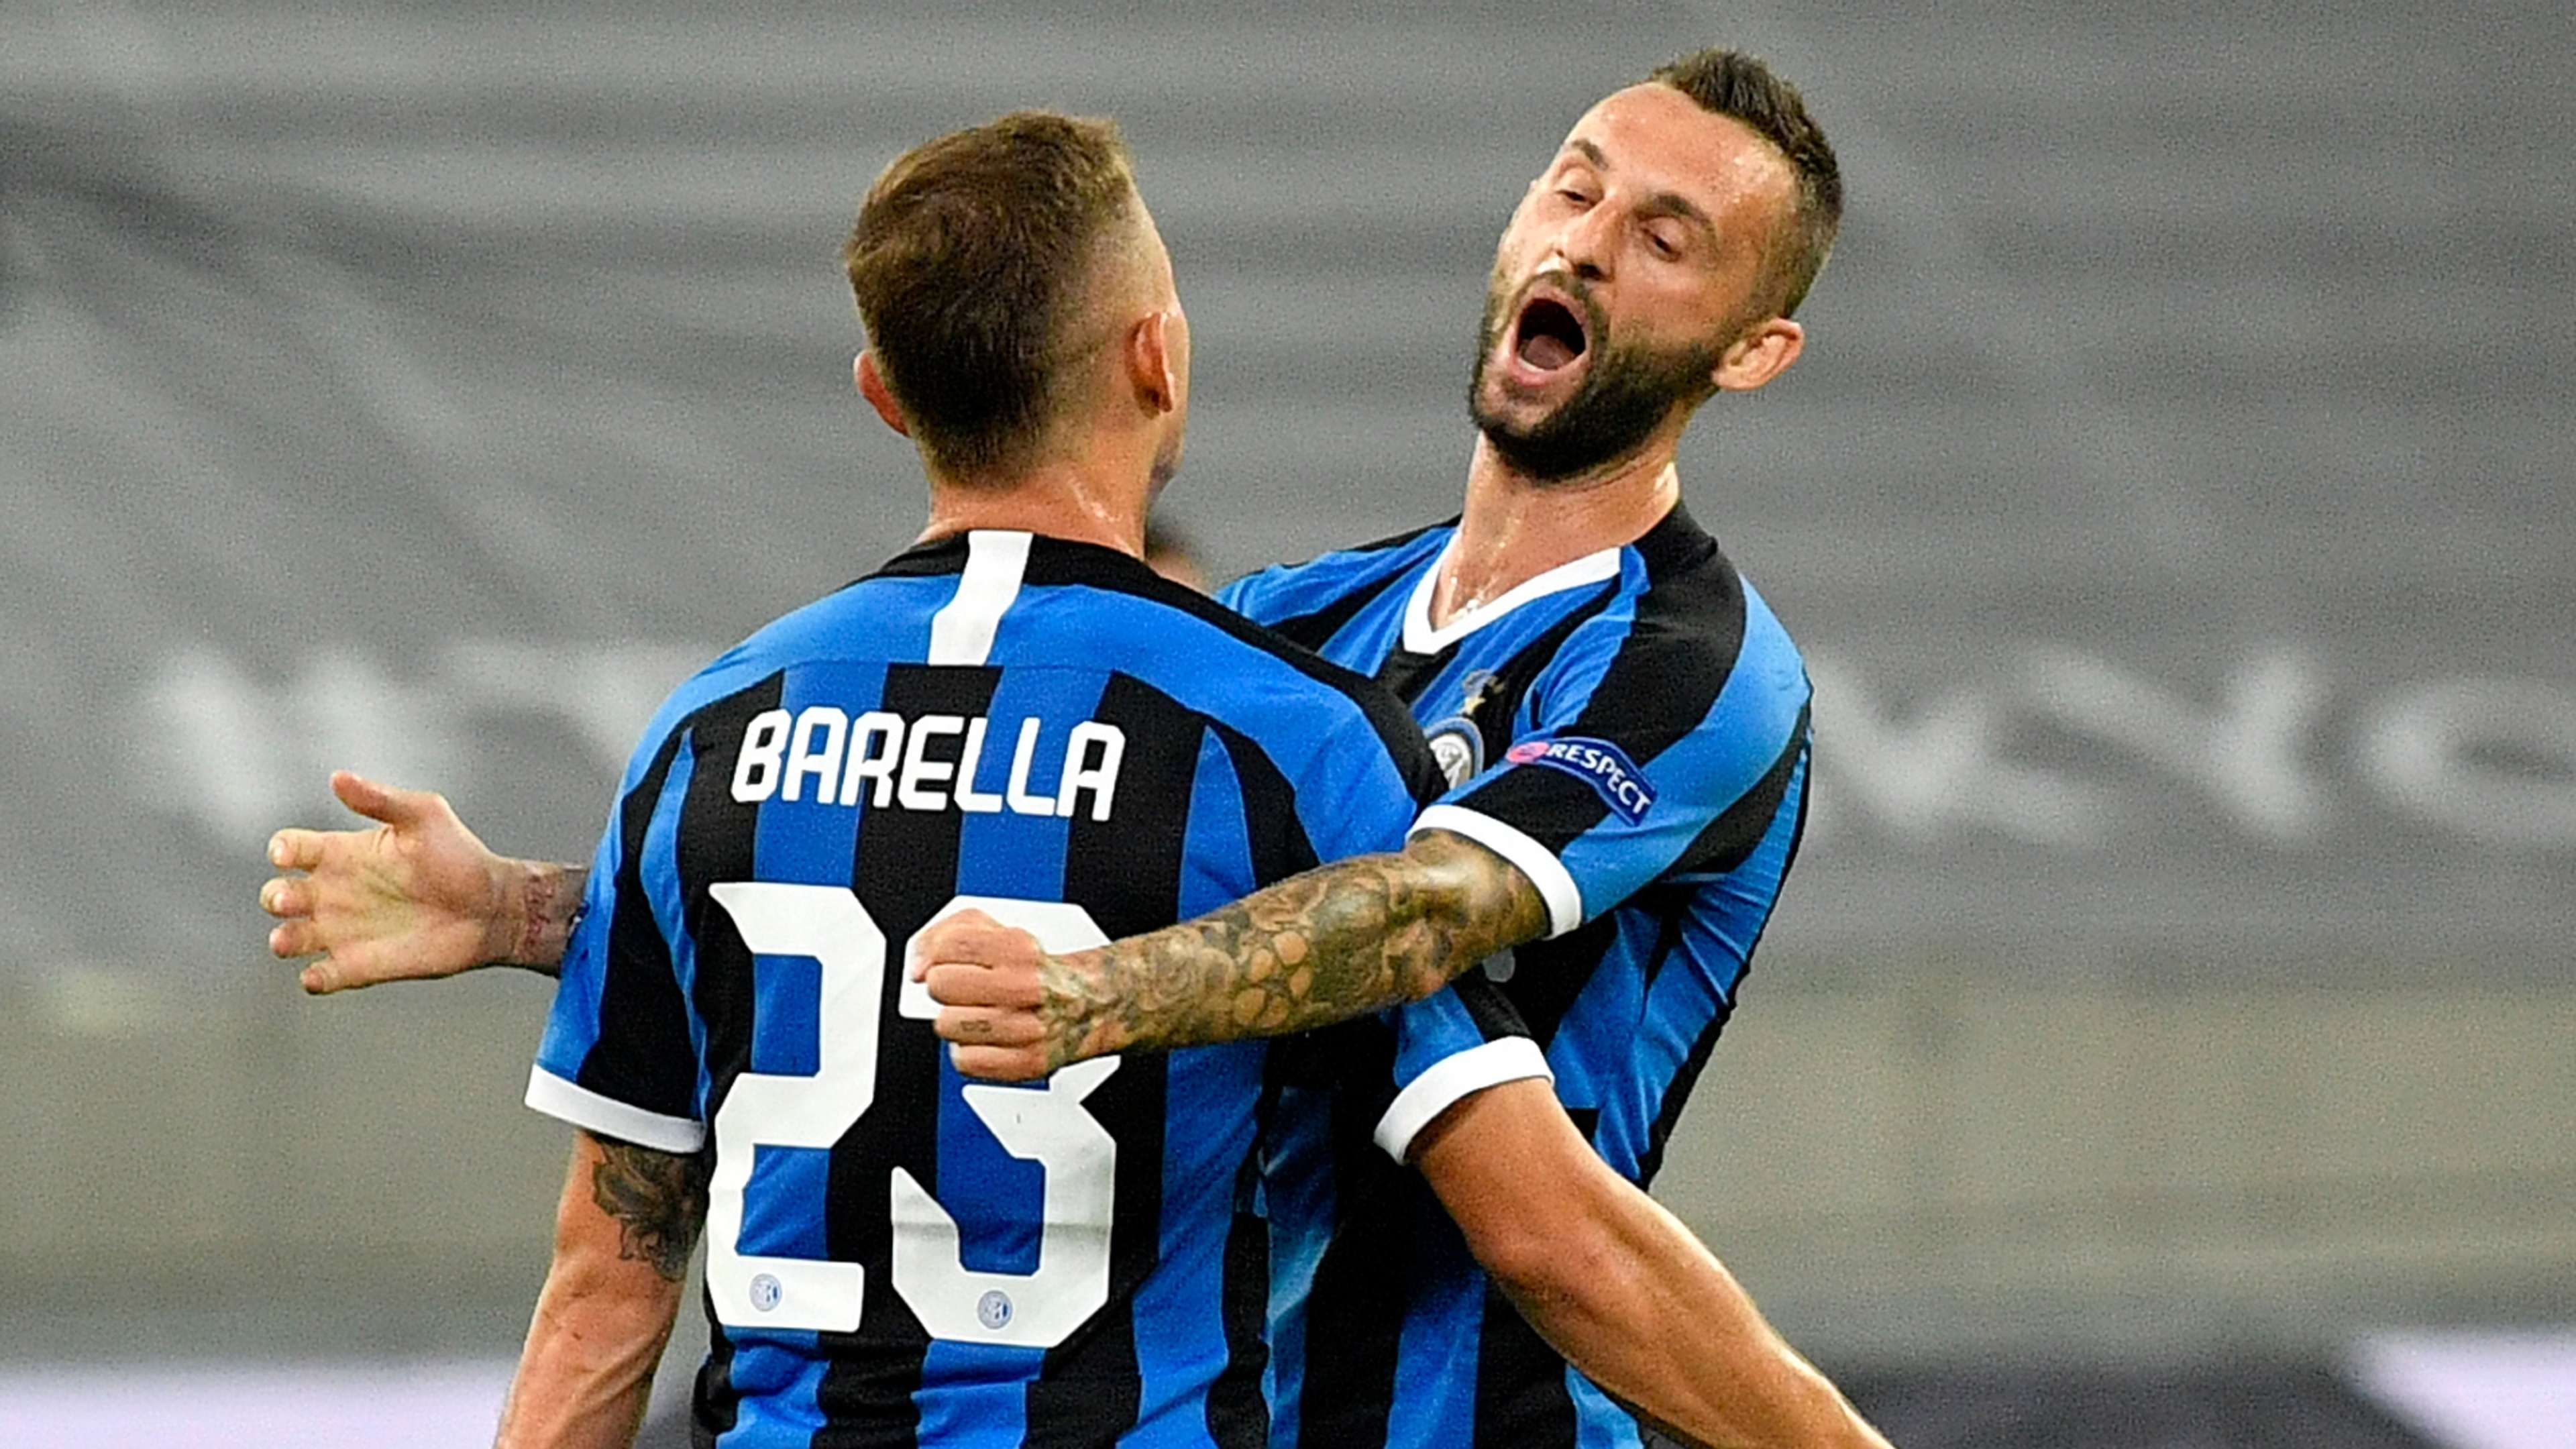 Nicolo Barella Marcelo Brozovic Inter 2019-20